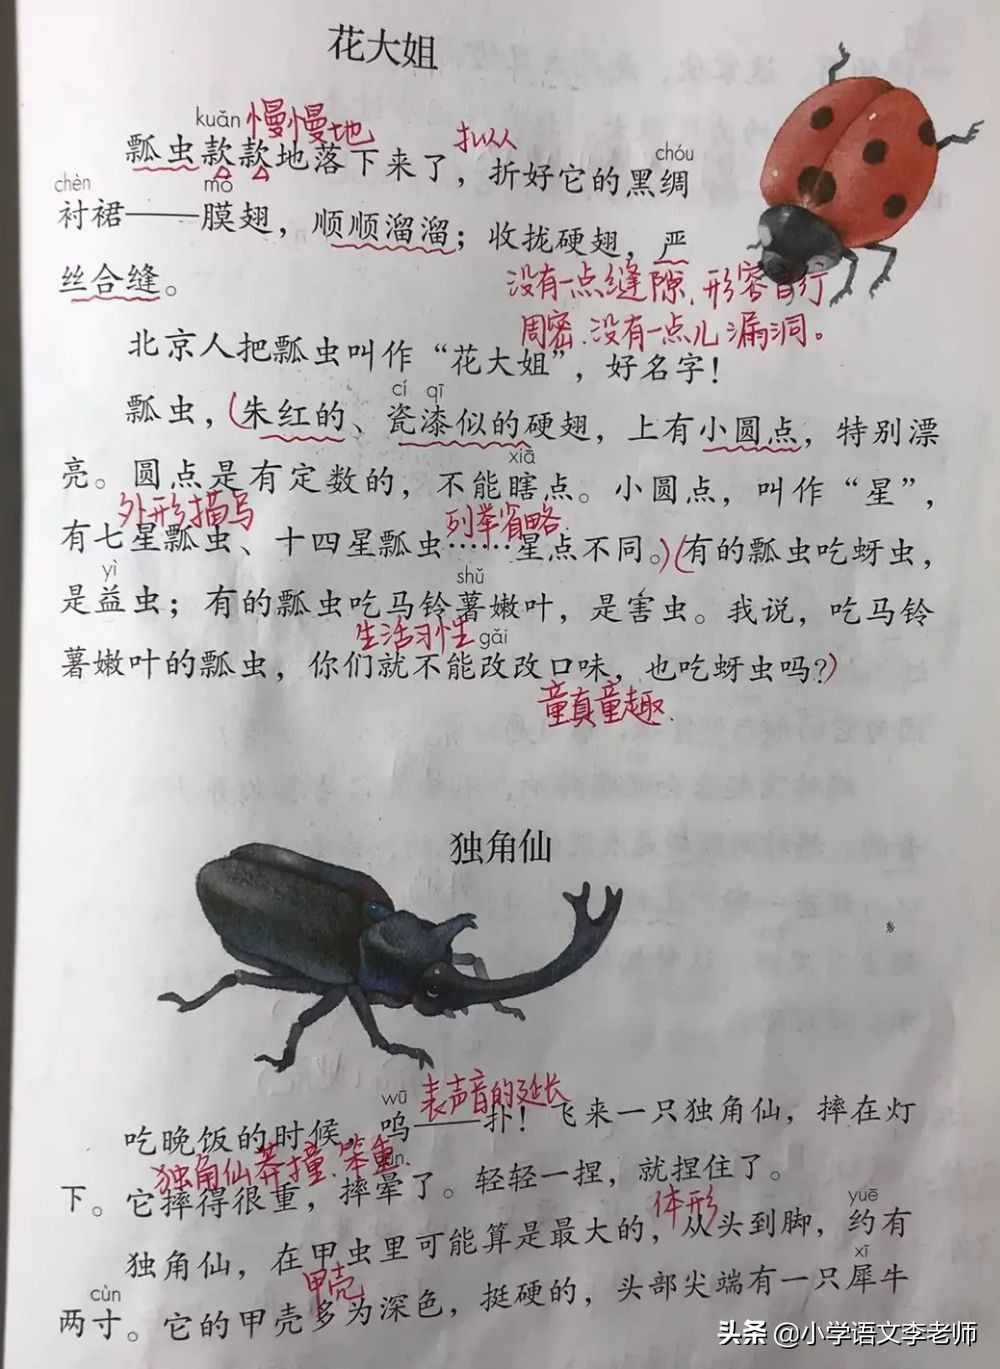 三年级语文下册《昆虫备忘录》课文解读，课堂笔记整理详细